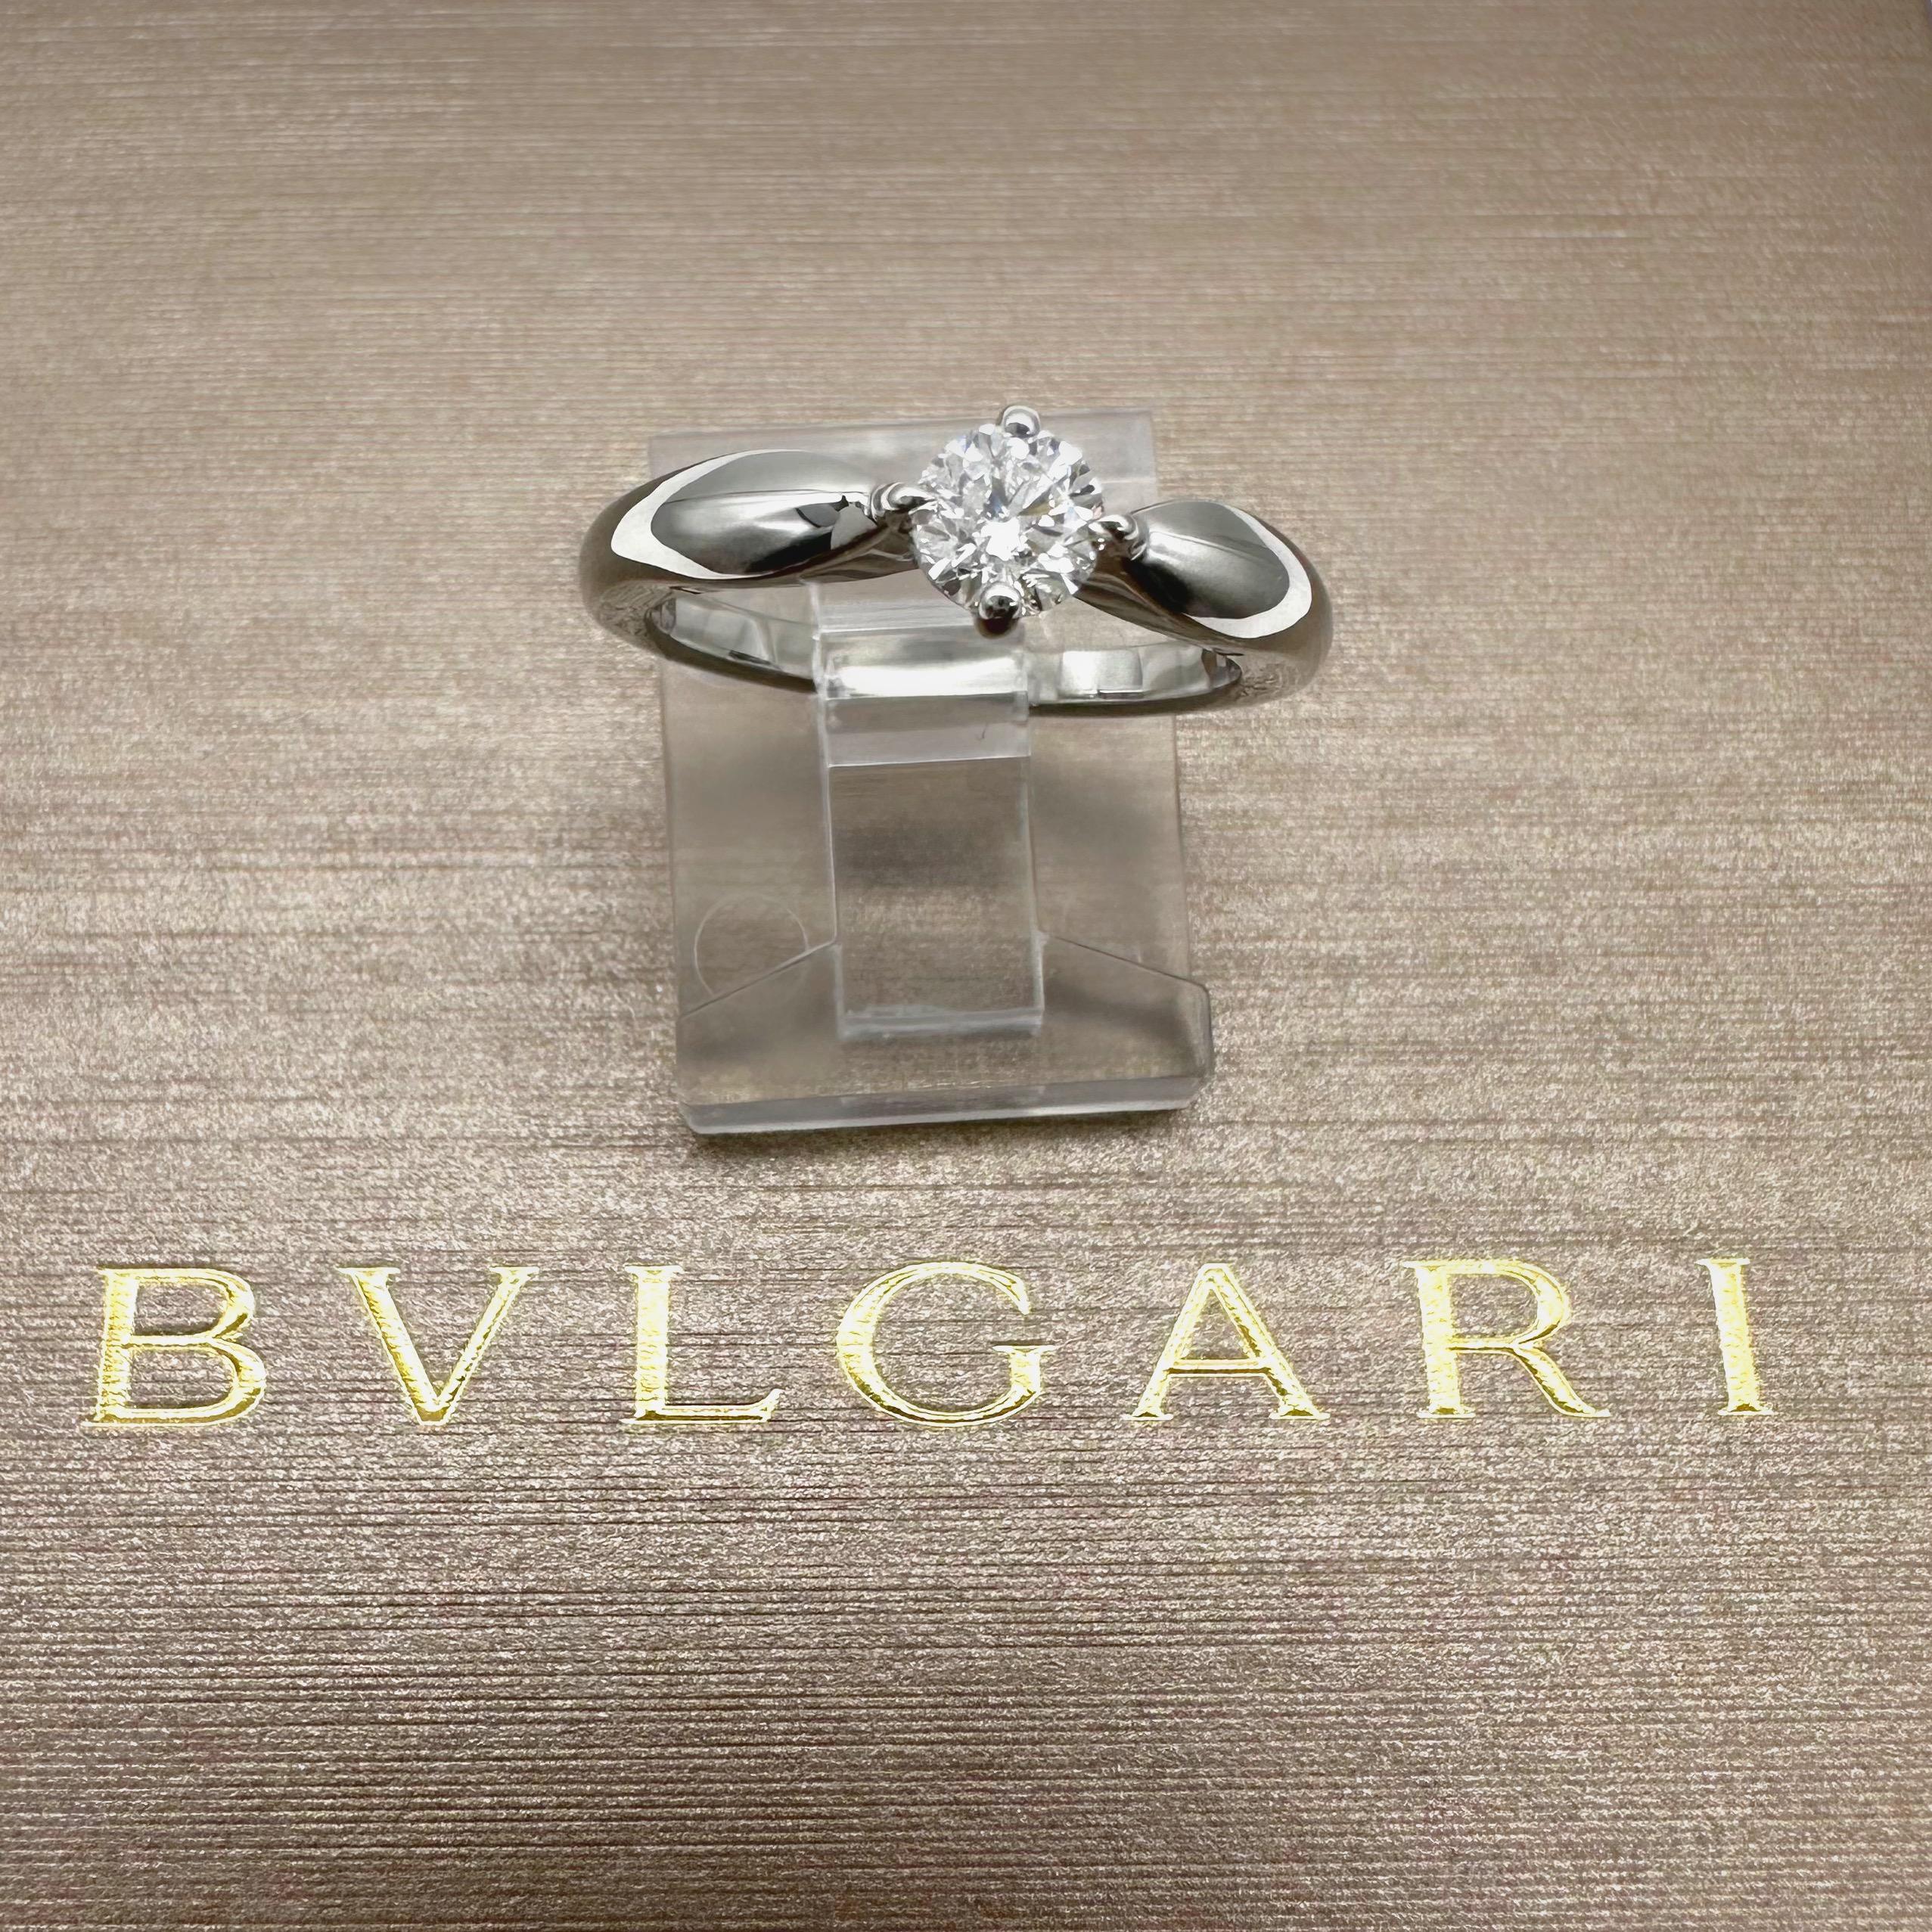 Bvlgari Dedicata a Venezia Torcello Round Diamond 0.30 Tcw Engagement Ring For Sale 4